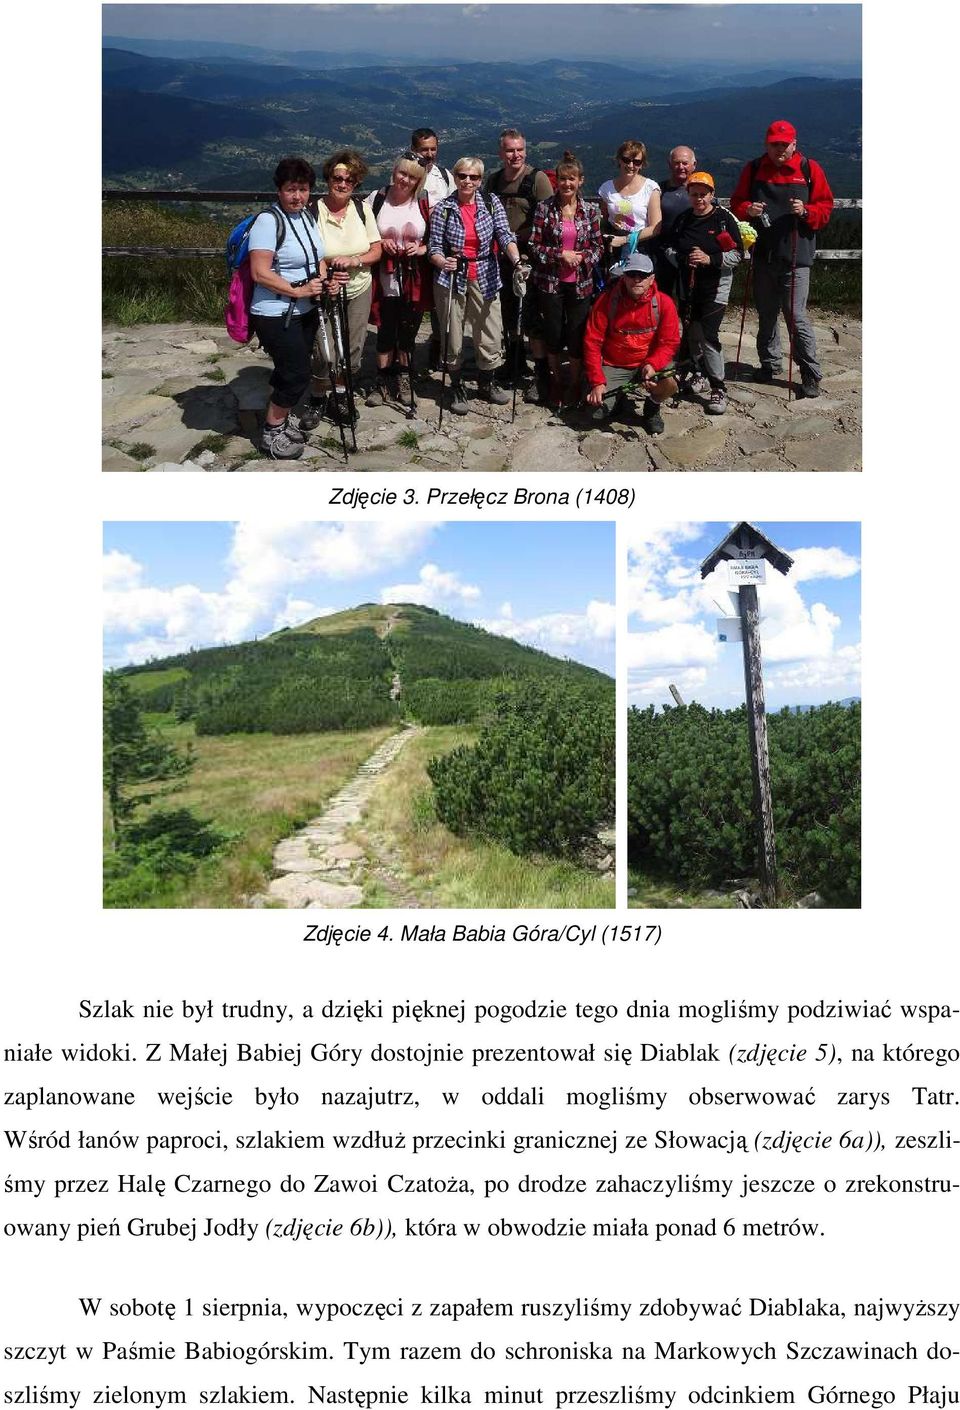 Wśród łanów paproci, szlakiem wzdłuż przecinki granicznej ze Słowacją (zdjęcie 6a)), zeszliśmy przez Halę Czarnego do Zawoi Czatoża, po drodze zahaczyliśmy jeszcze o zrekonstruowany pień Grubej Jodły